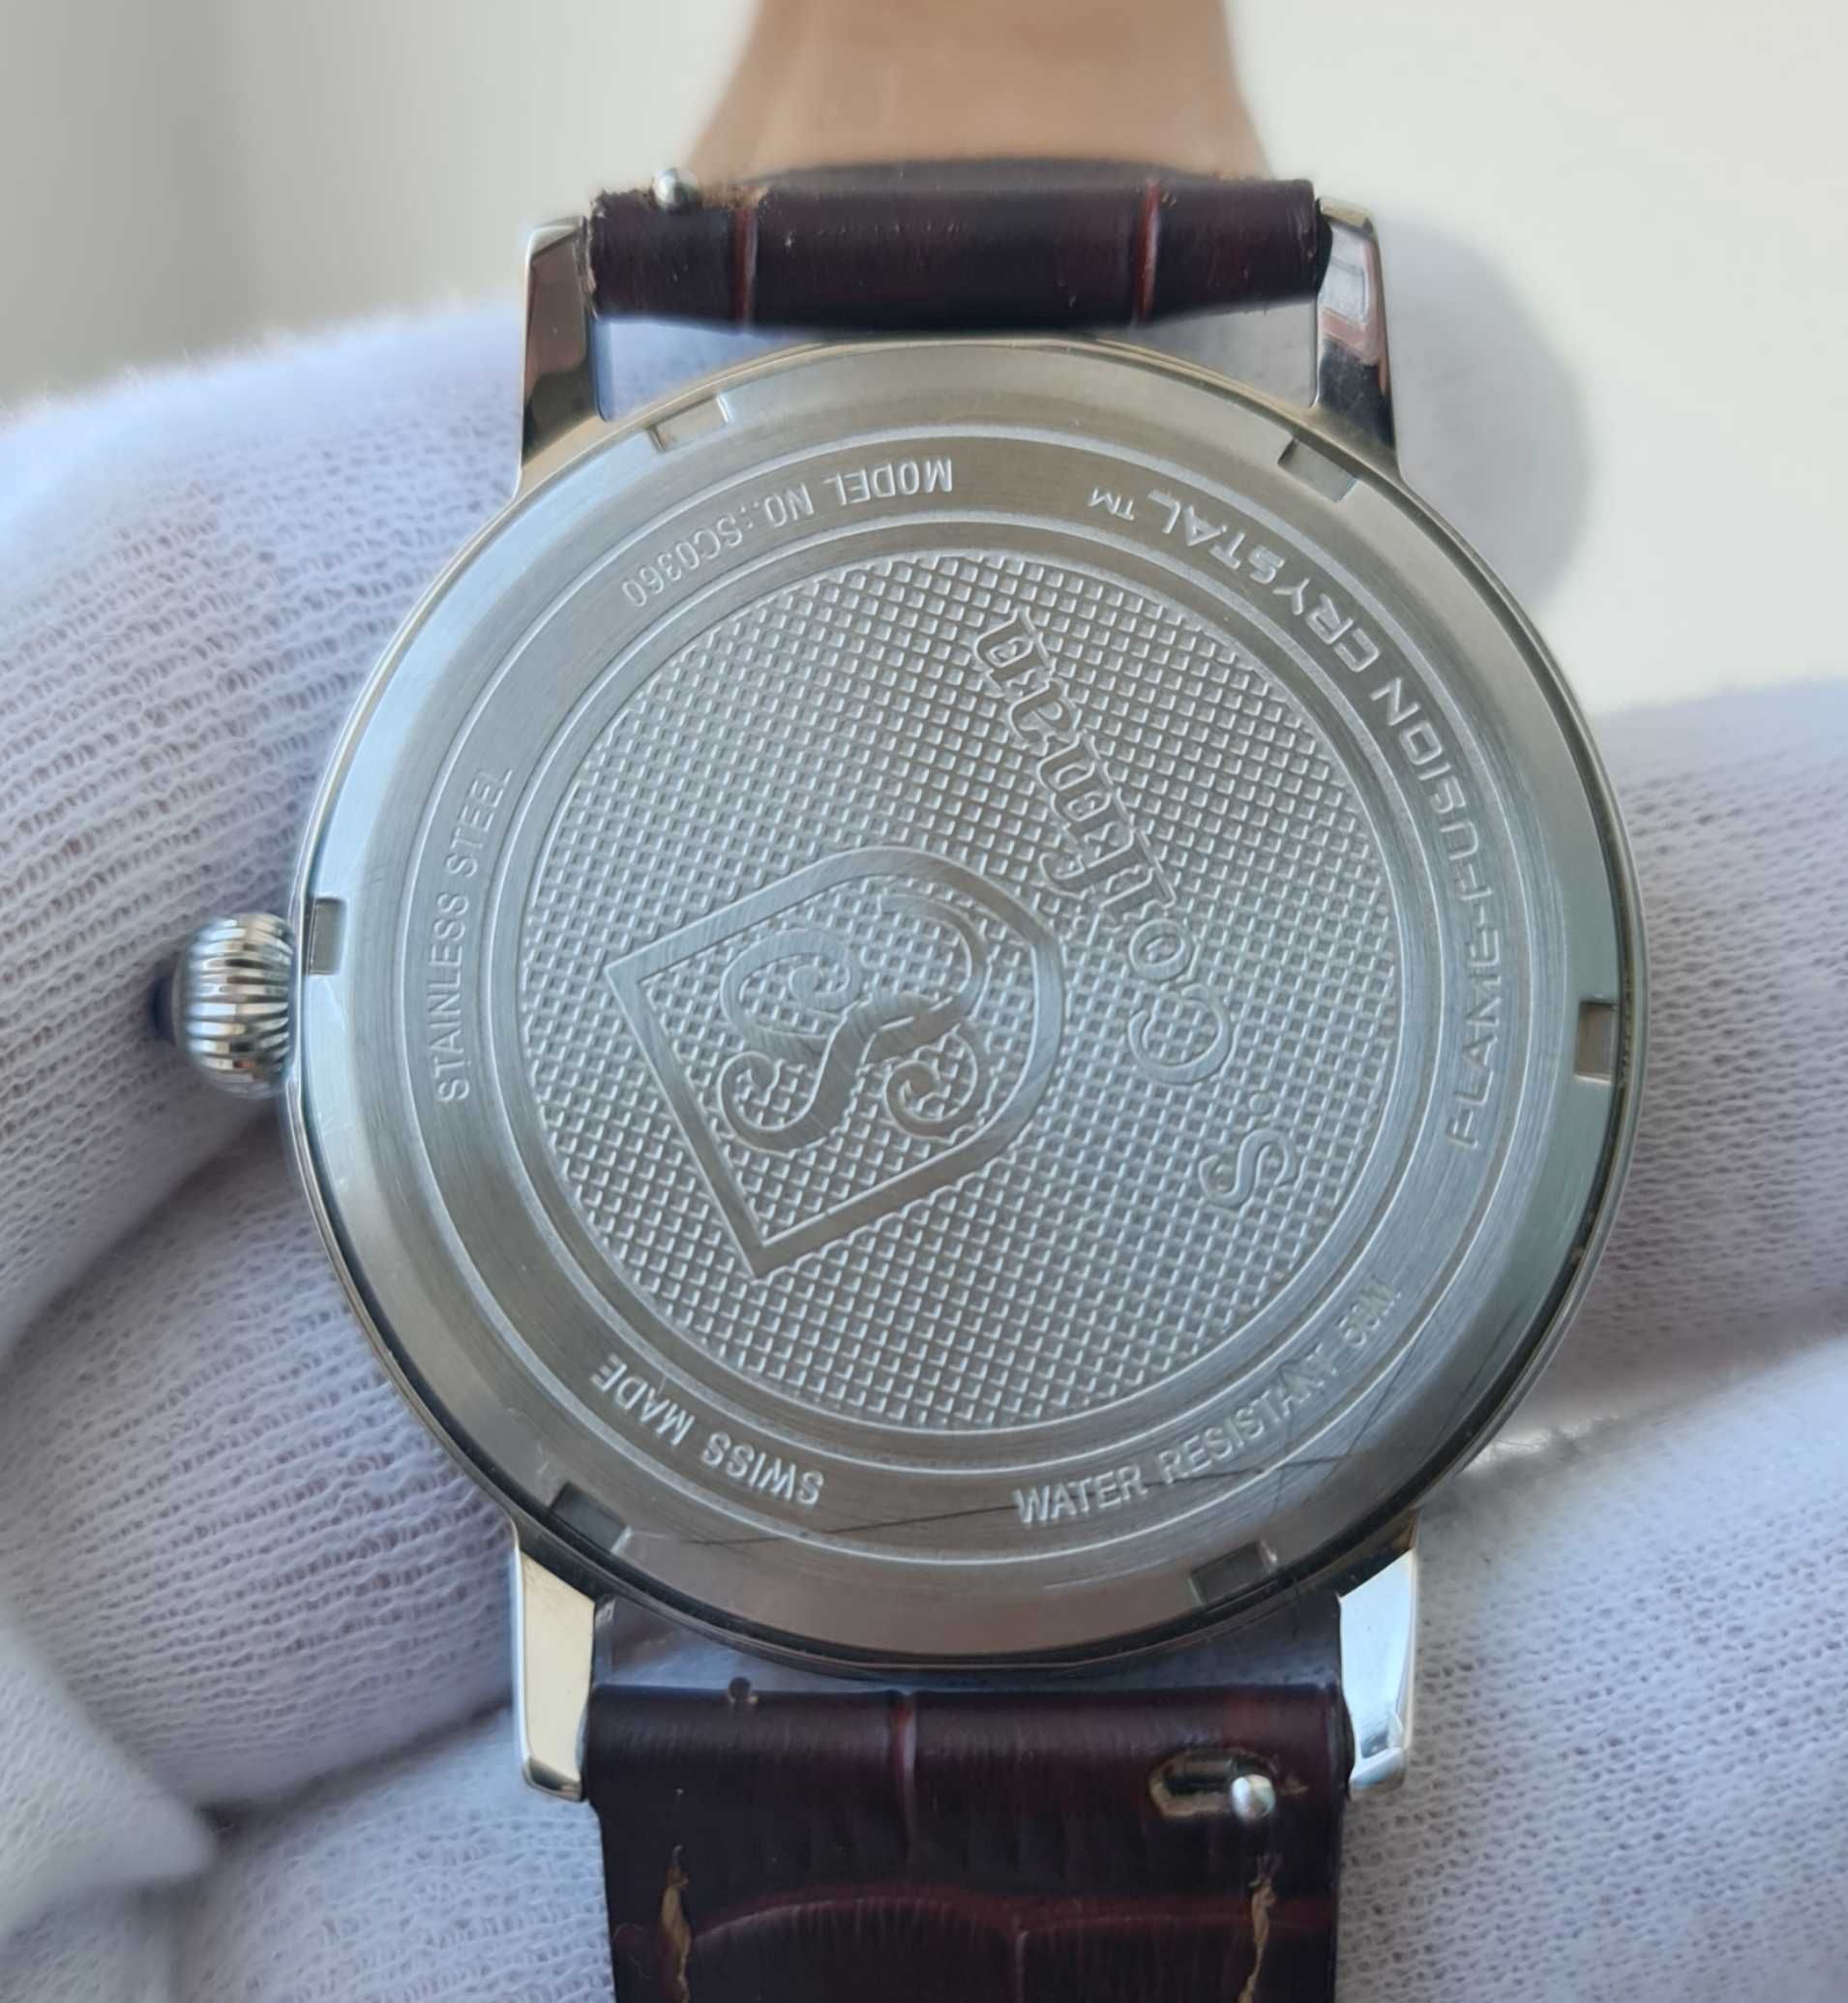 Чоловічий годинник часы S.Coifman SC0360 Swiss Made